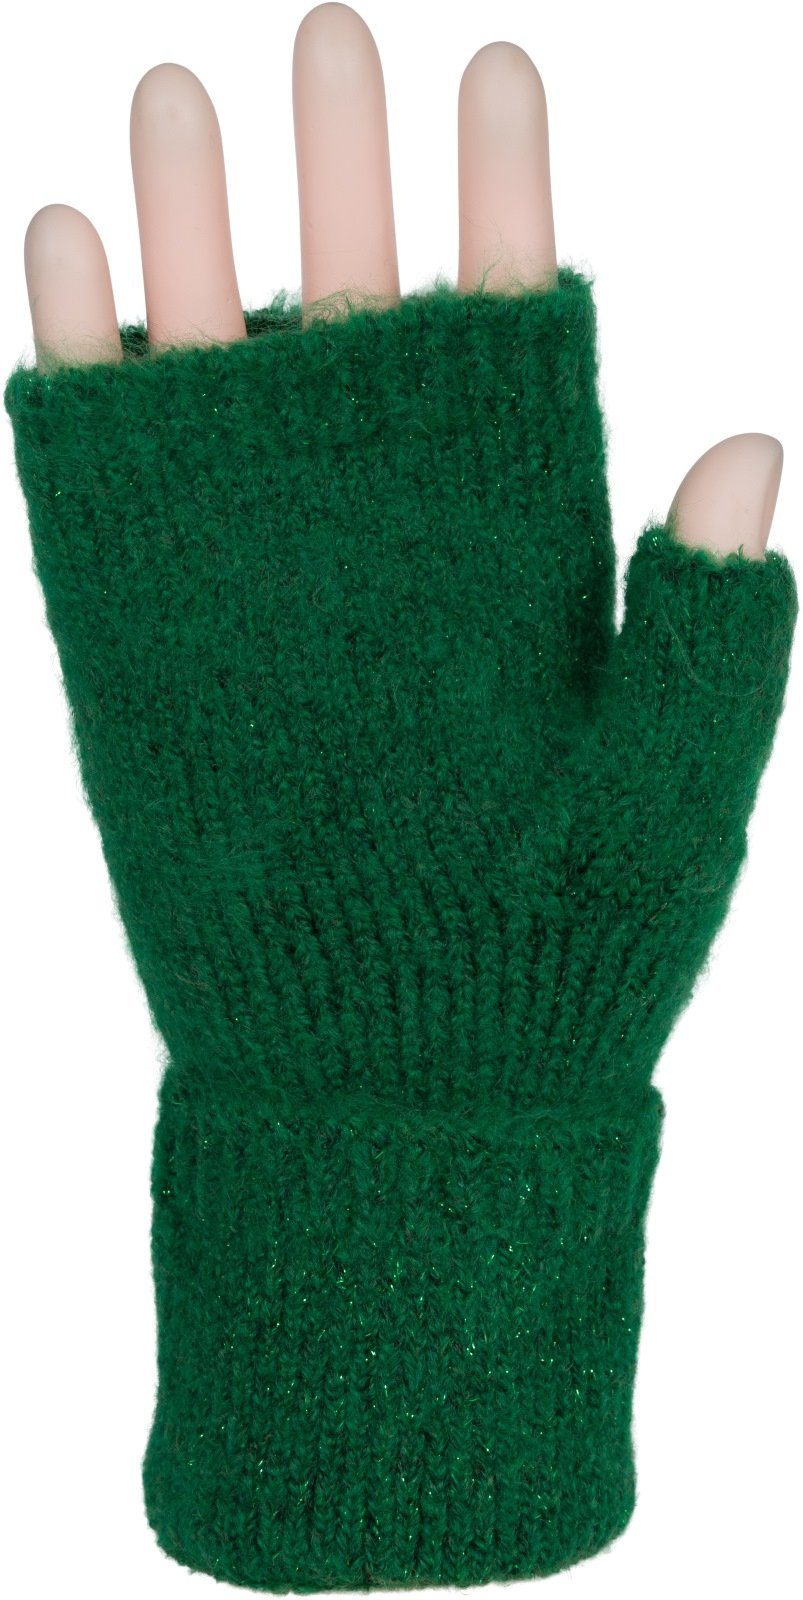 Grün Strickhandschuhe Fingerlose Zopfmuster styleBREAKER Strickhandschuhe